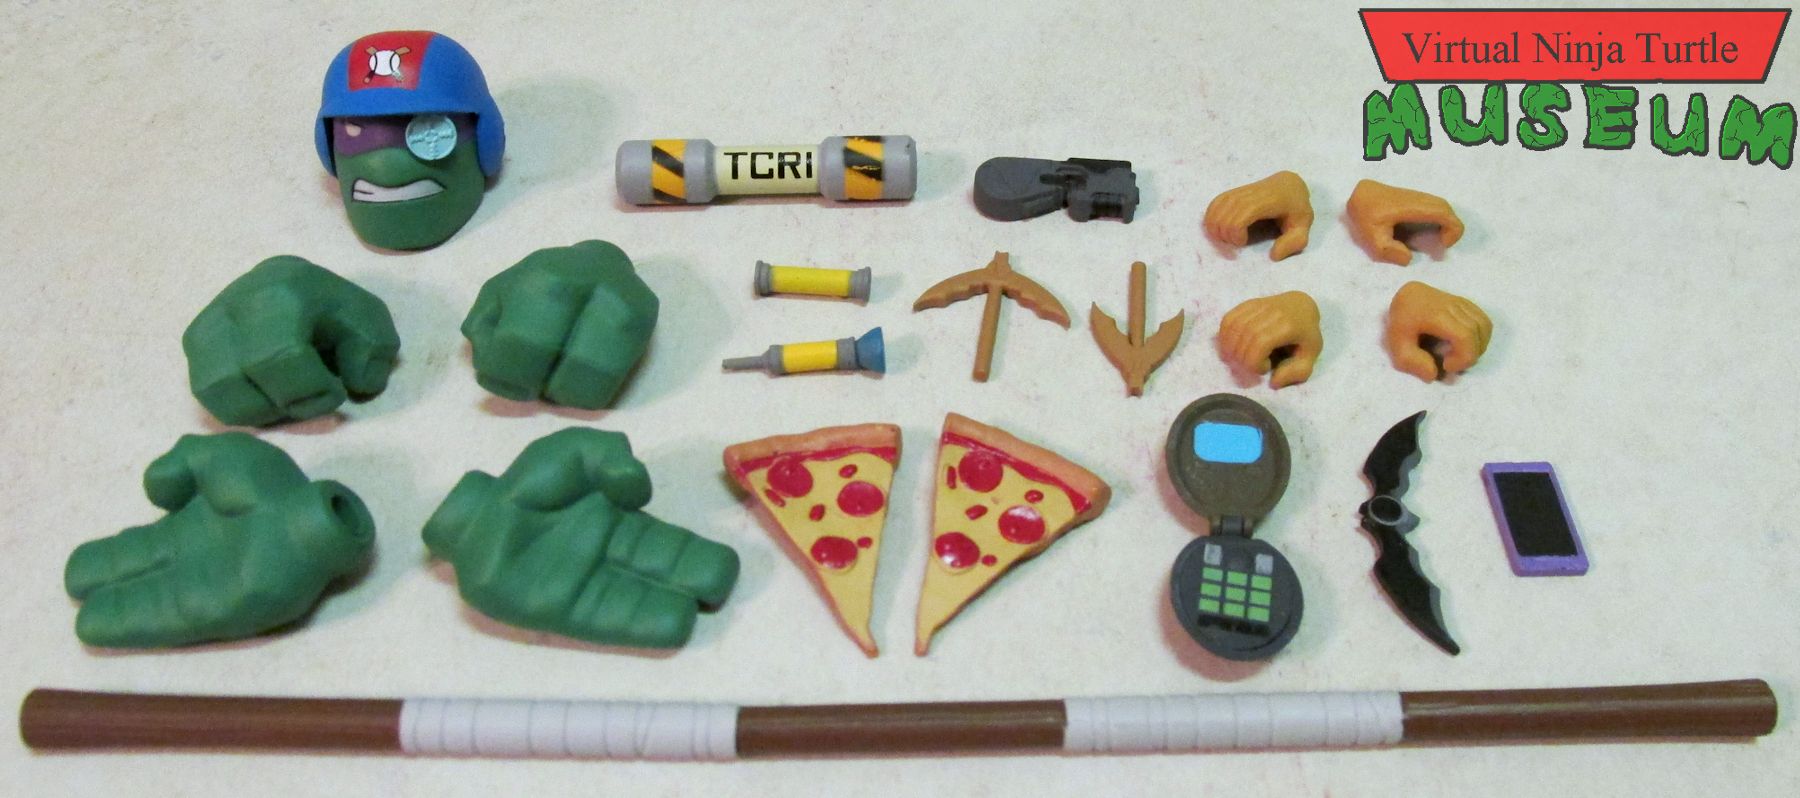 Donatello & Batgirl's accessories